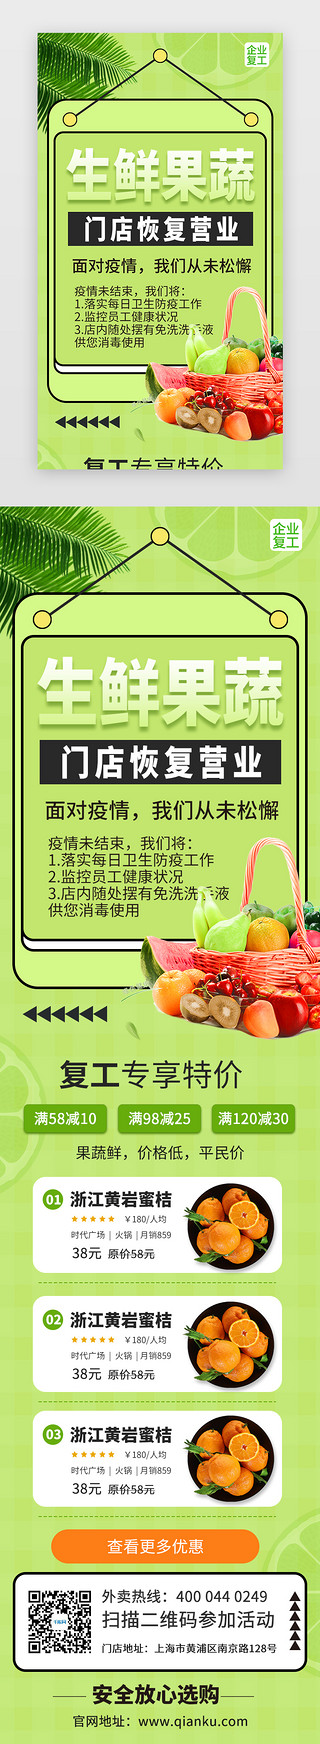 复工海报UI设计素材_生鲜果蔬复工促销活动H5